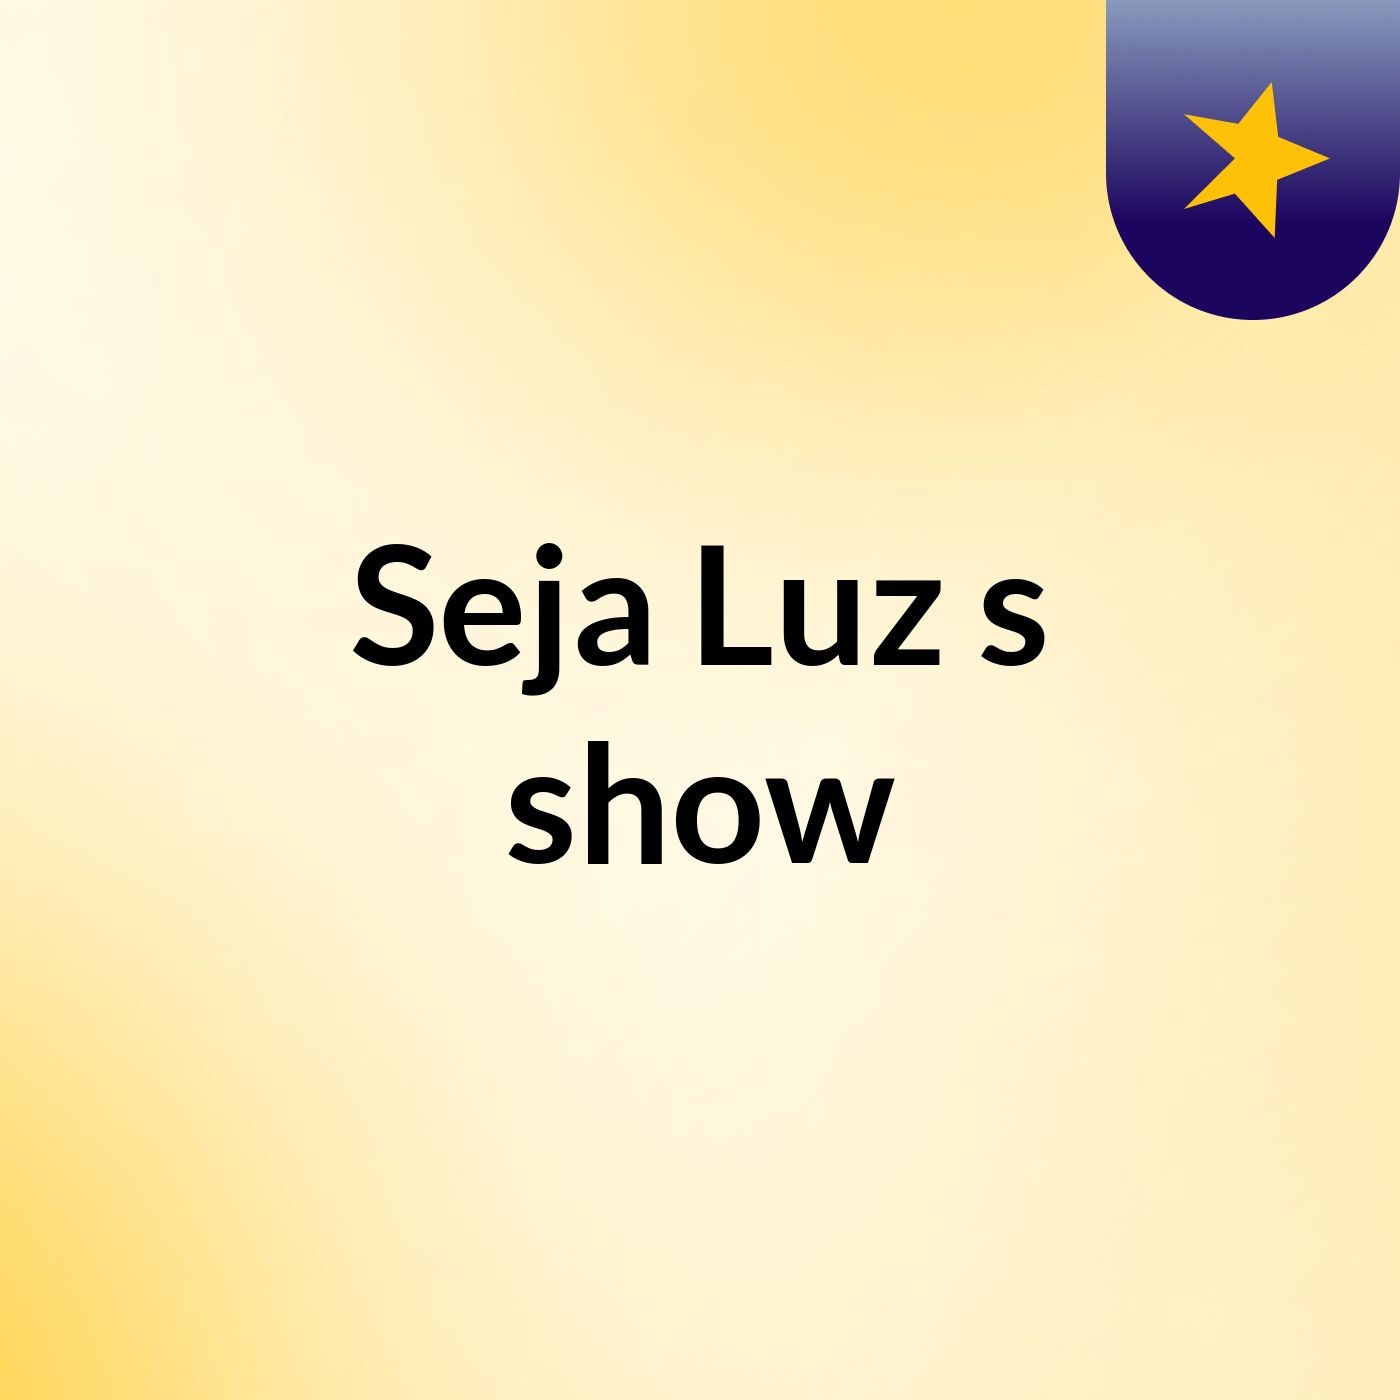 Seja Luz's show